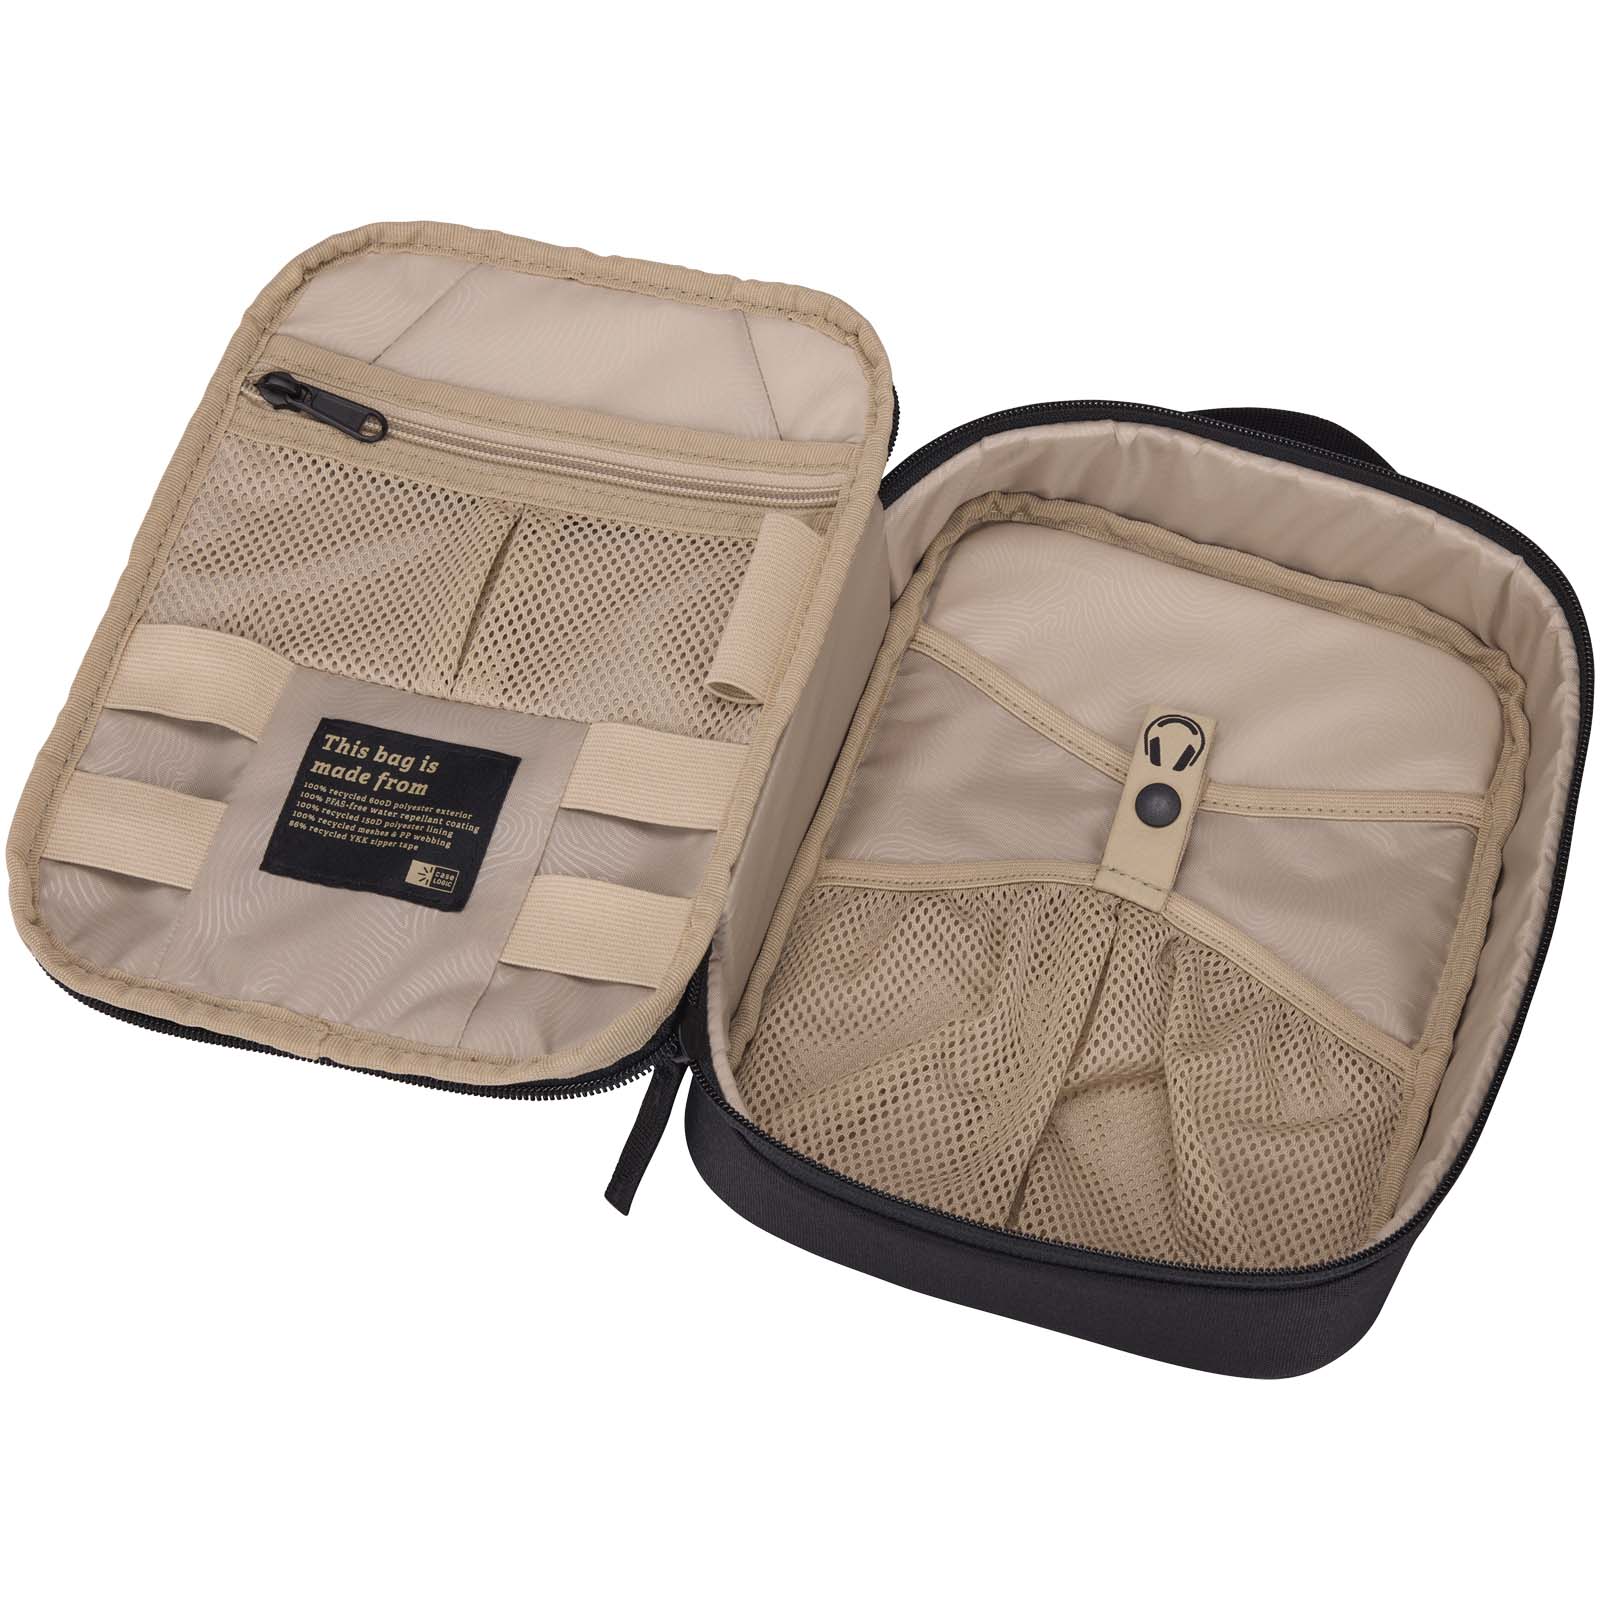 Advertising Travel Accessories - Case Logic Invigo accessories bag - 3